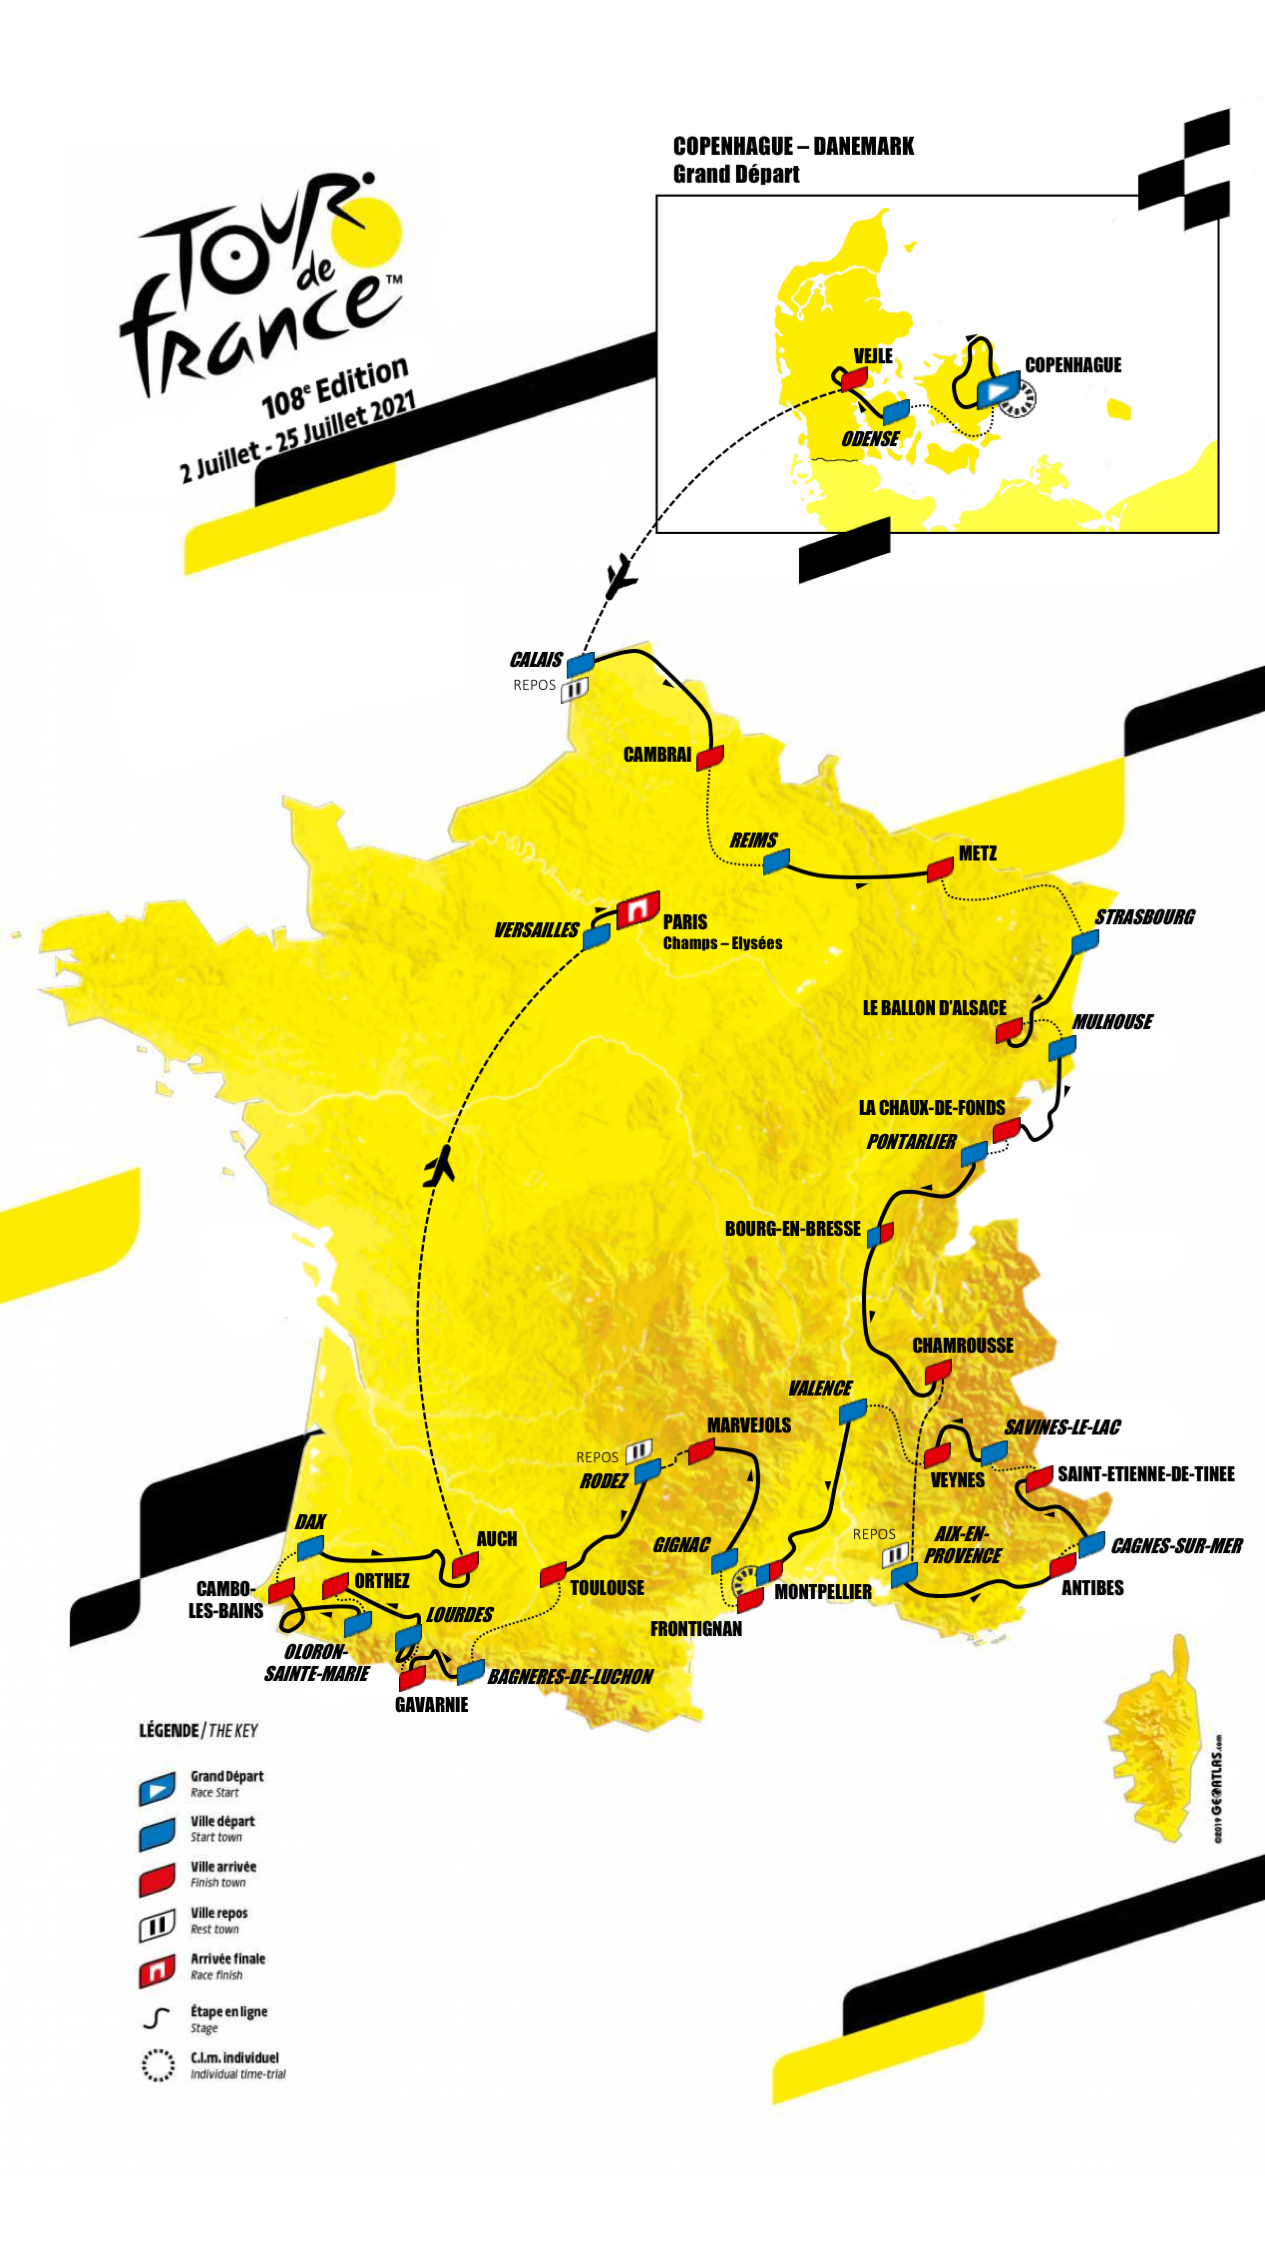 [Concours] Tour de France 2022 - Résultats p.96 - Page 14 - Le